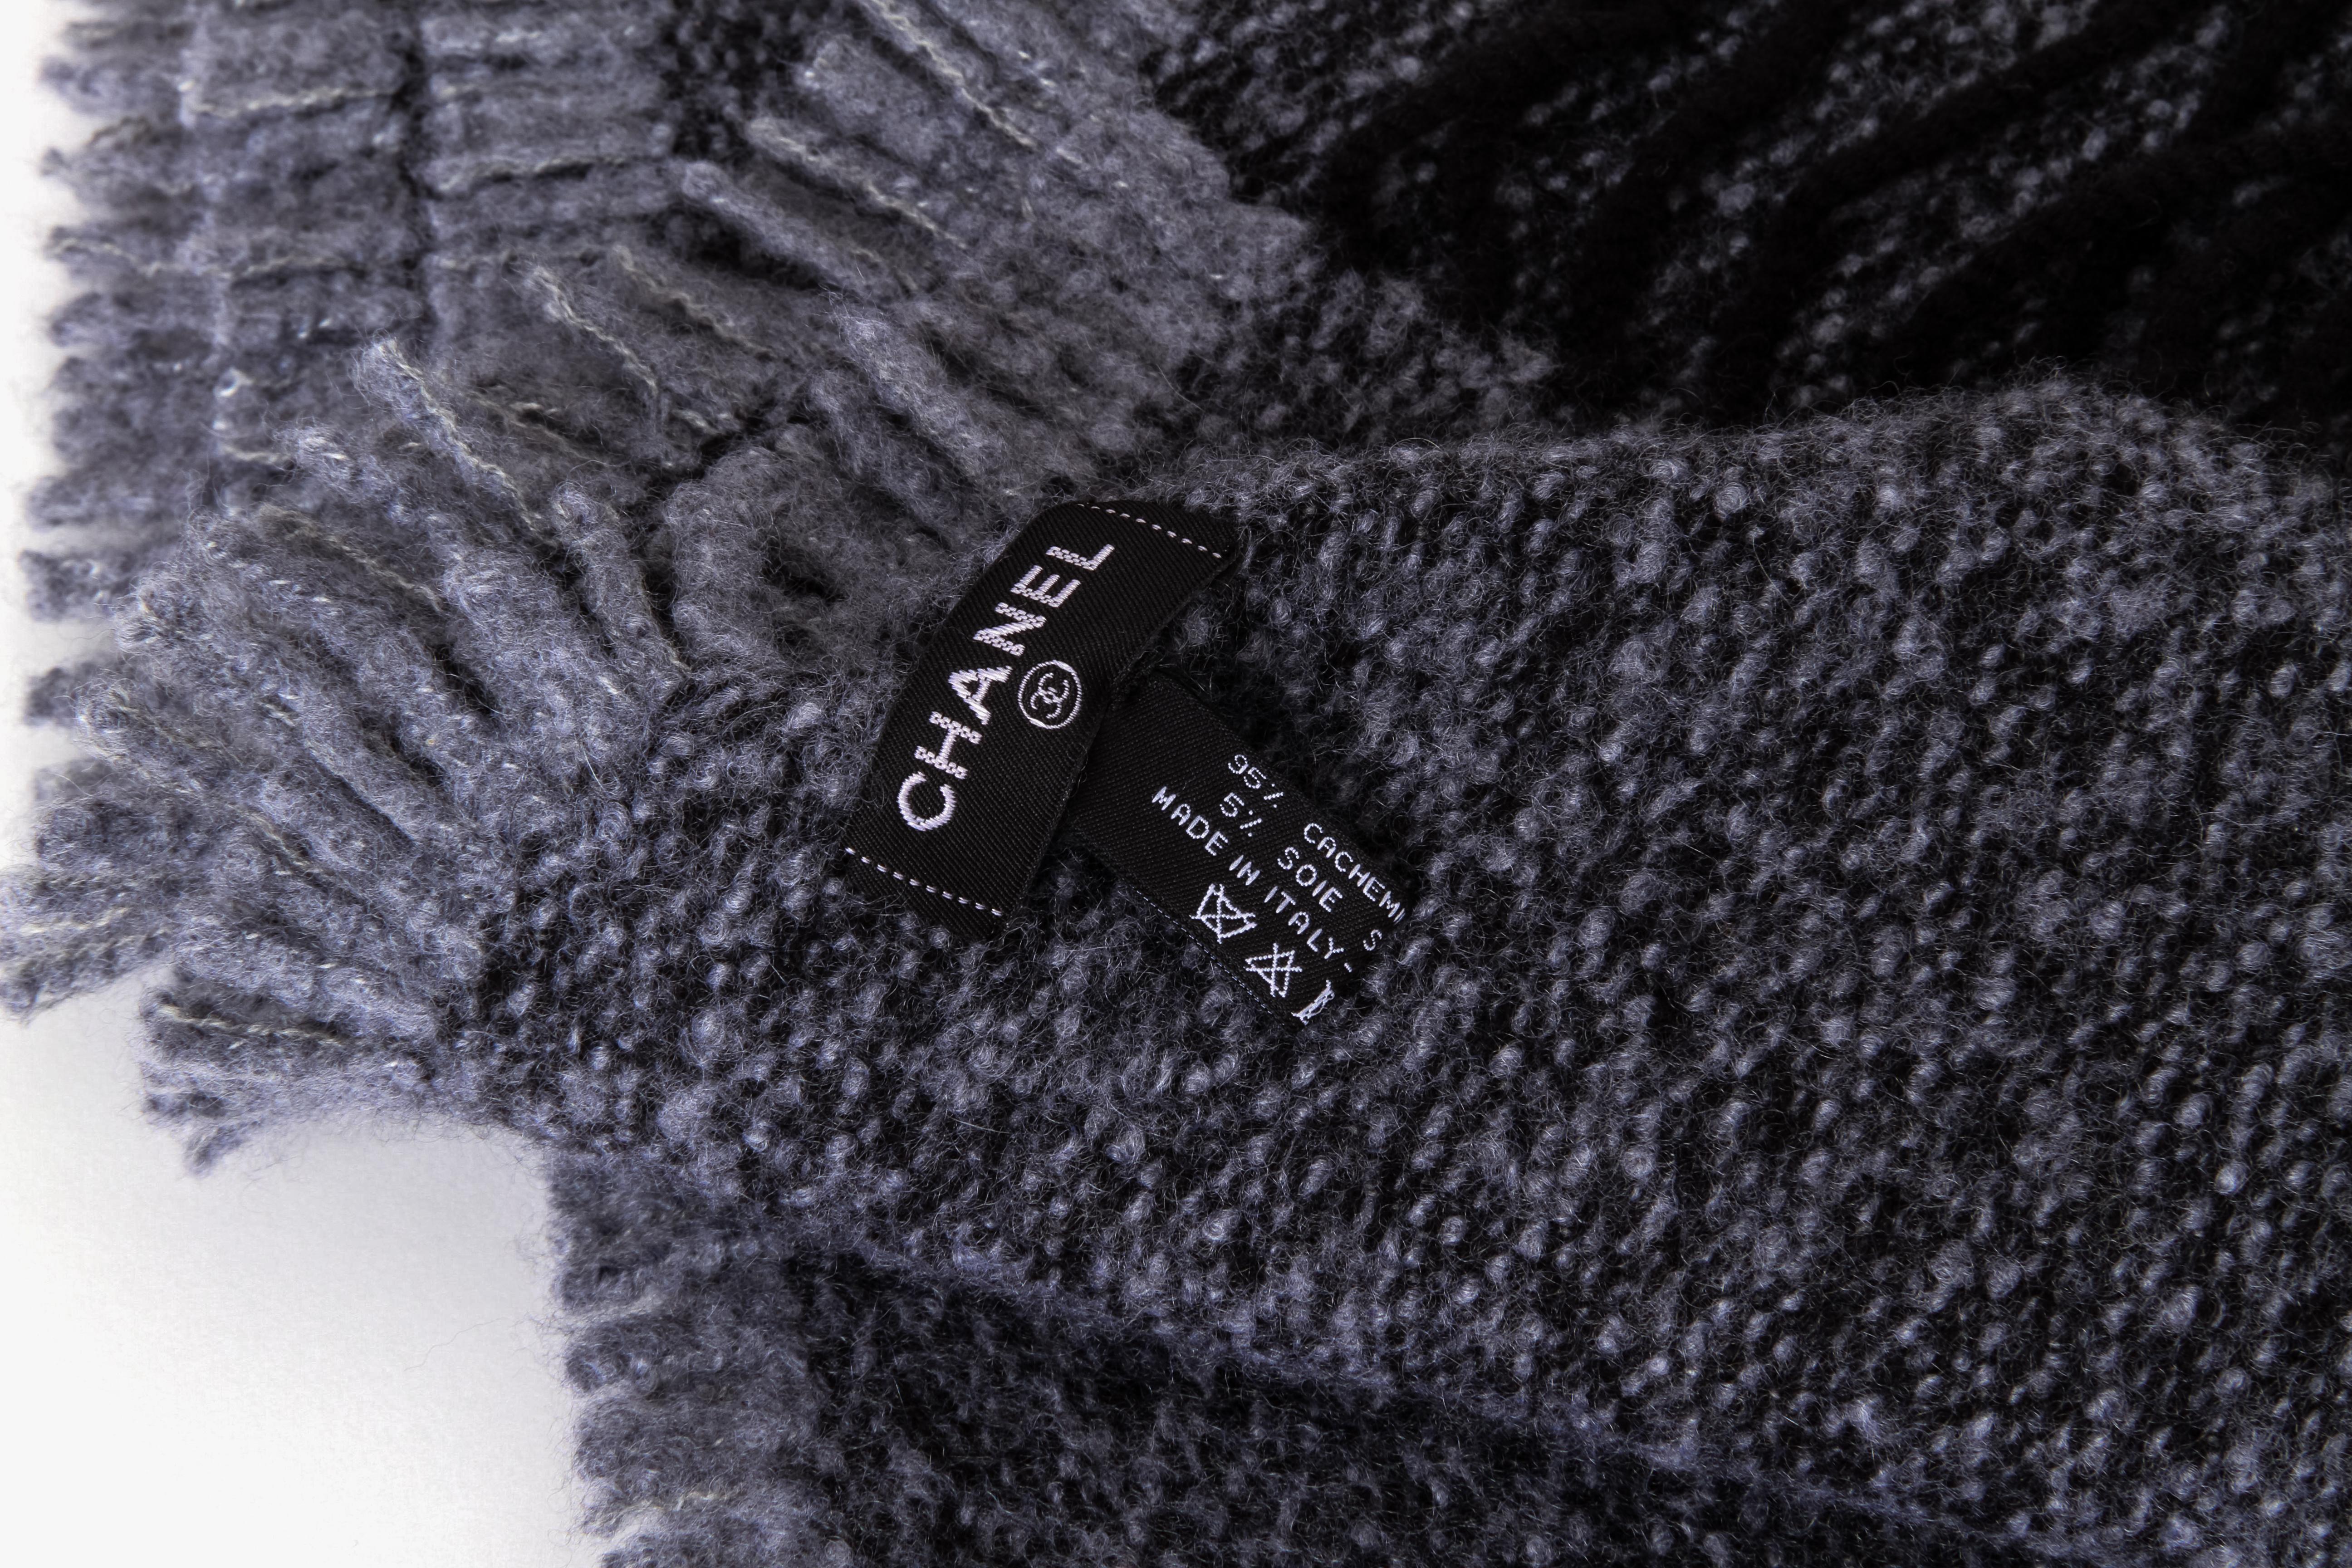 Chanel Marke neu in unbenutzten Zustand übergroße Decke / werfen. 3.6 lbs von Kaschmir. Leichte Pillingbildung (wir empfehlen, es über Nacht in den Gefrierschrank zu legen). Doppelseitig, eine Seite dunkler und eine heller. Cc-Logo zentrieren.